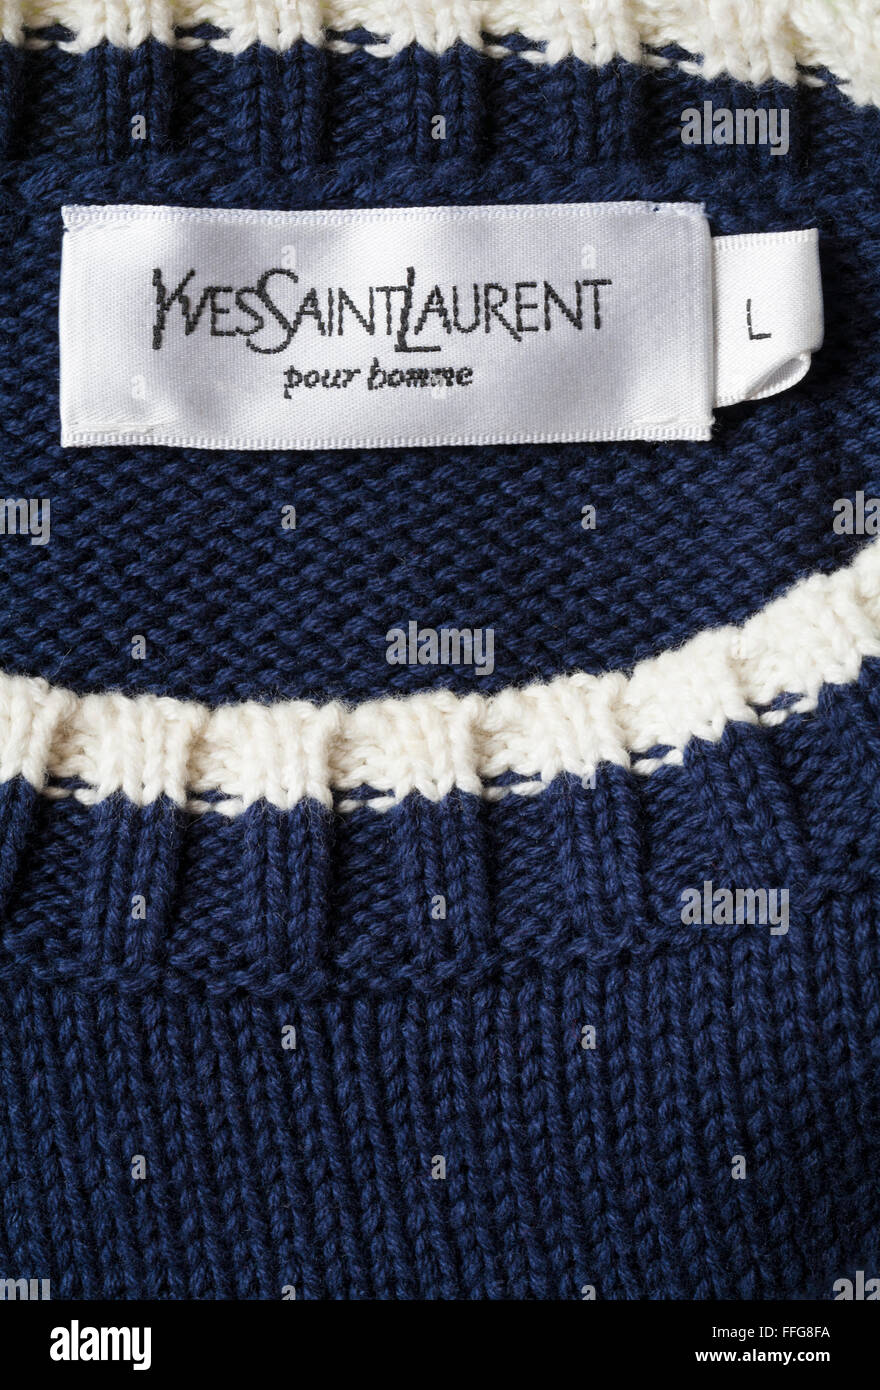 Yves Saint Laurent pour homme etiqueta en puente del hombre. Foto de stock